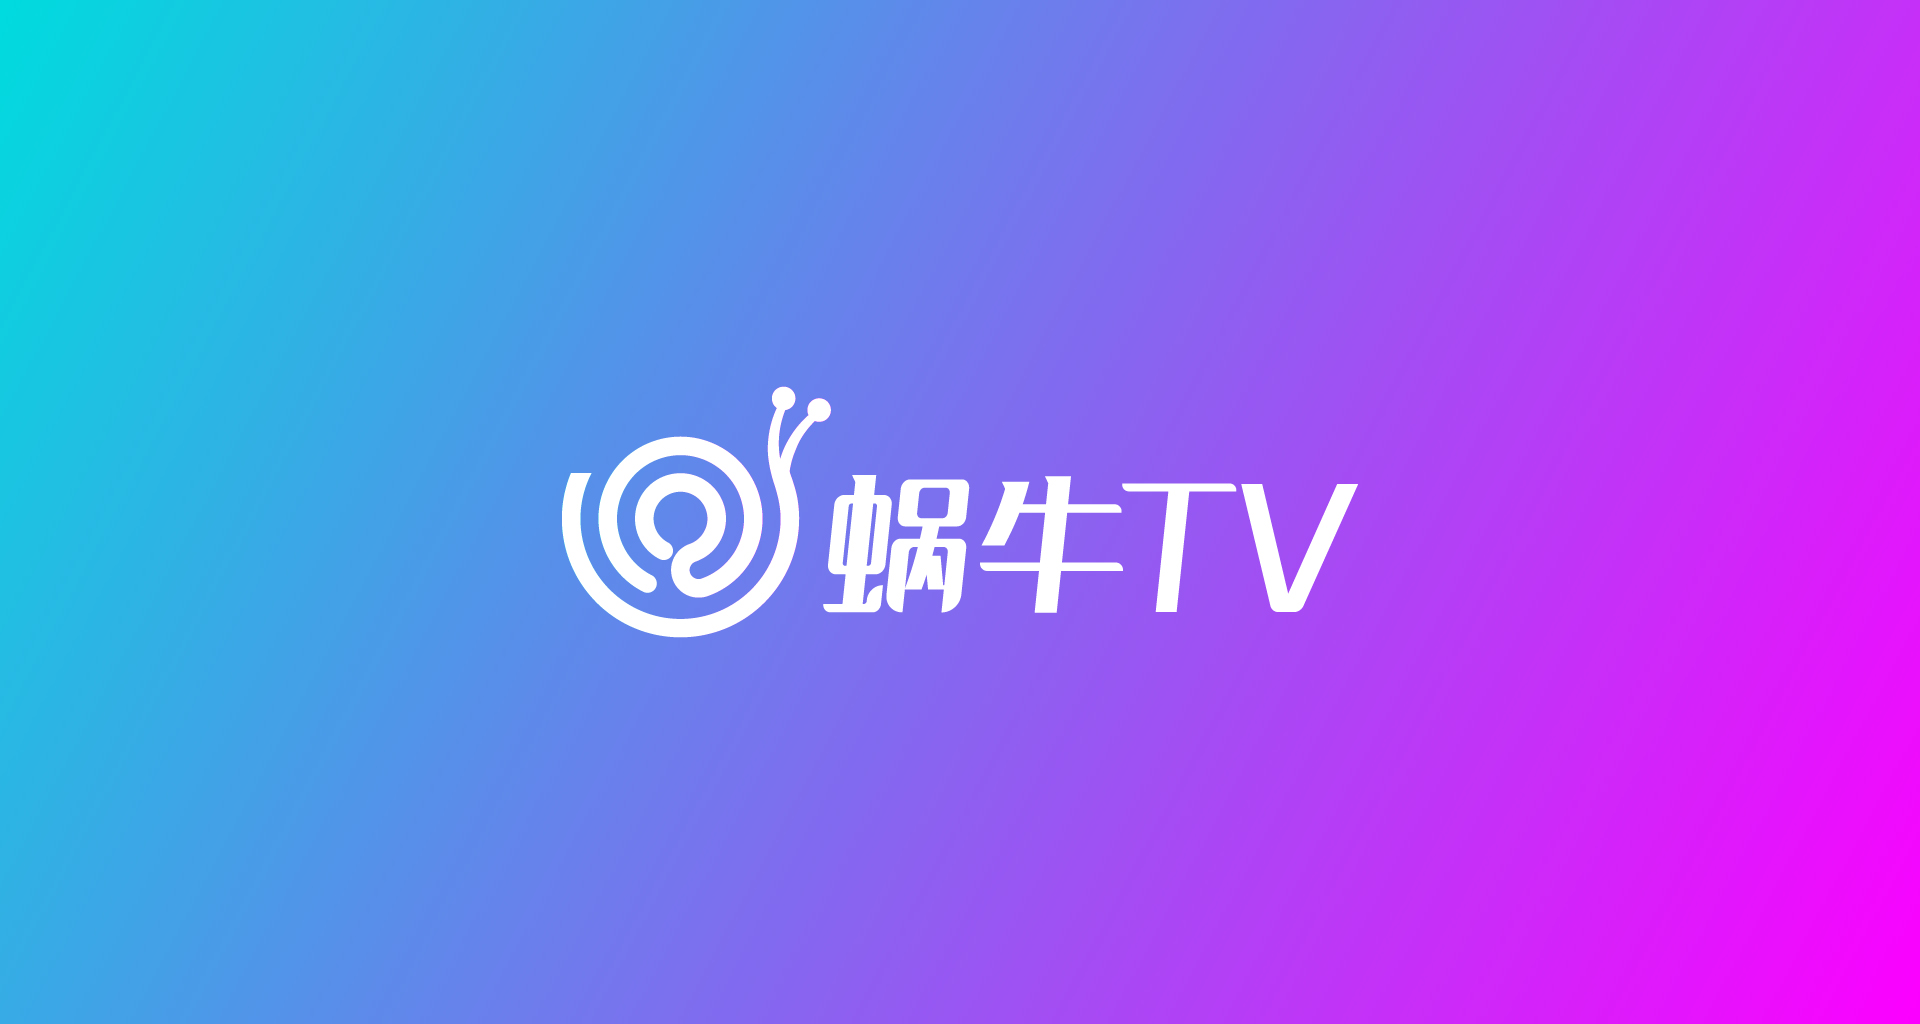 蜗牛TV-05.jpg